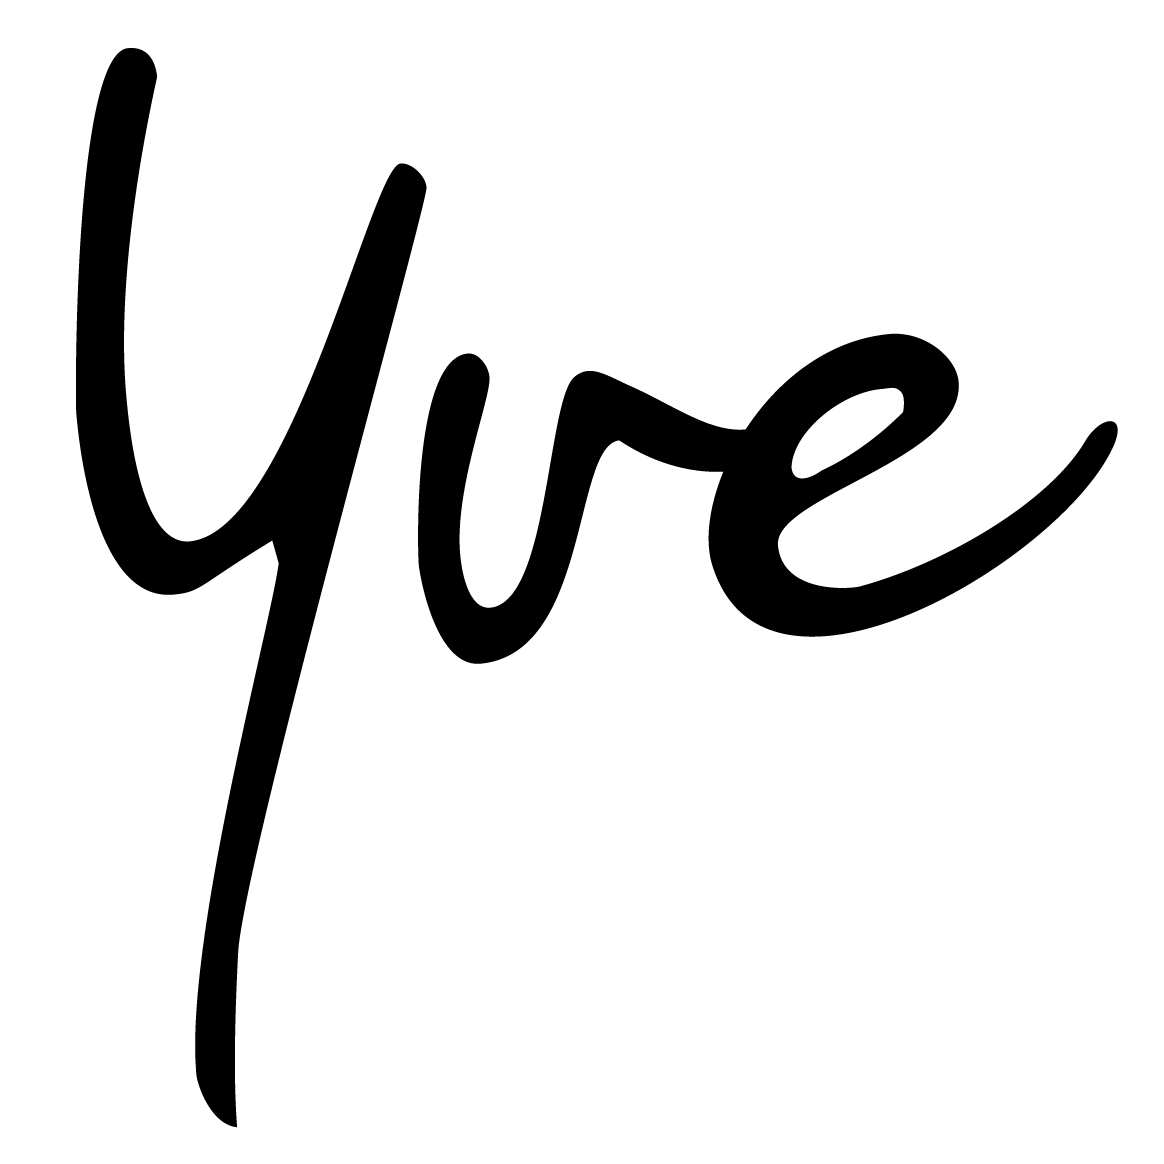 Yve Logo